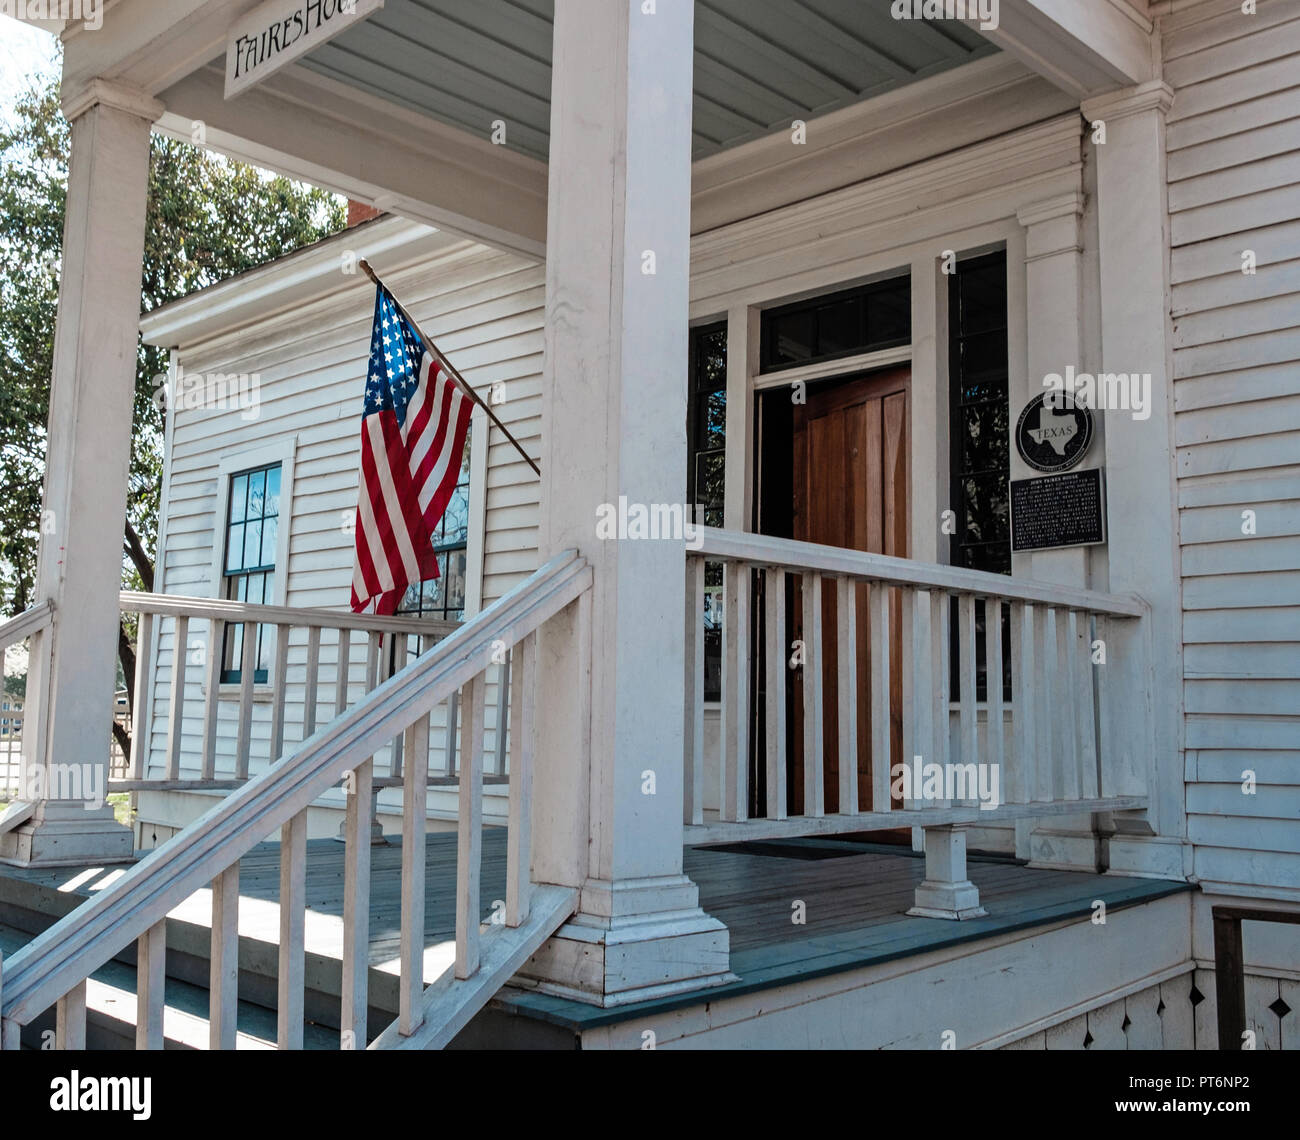 Eingang des Weiß geschuppt Haus mit Stufen. Älteste Haus in Mckinney Texas stehend, Kastanie Square. Build 1854. Amerikanische Flagge auf erweiterten Pol Stockfoto